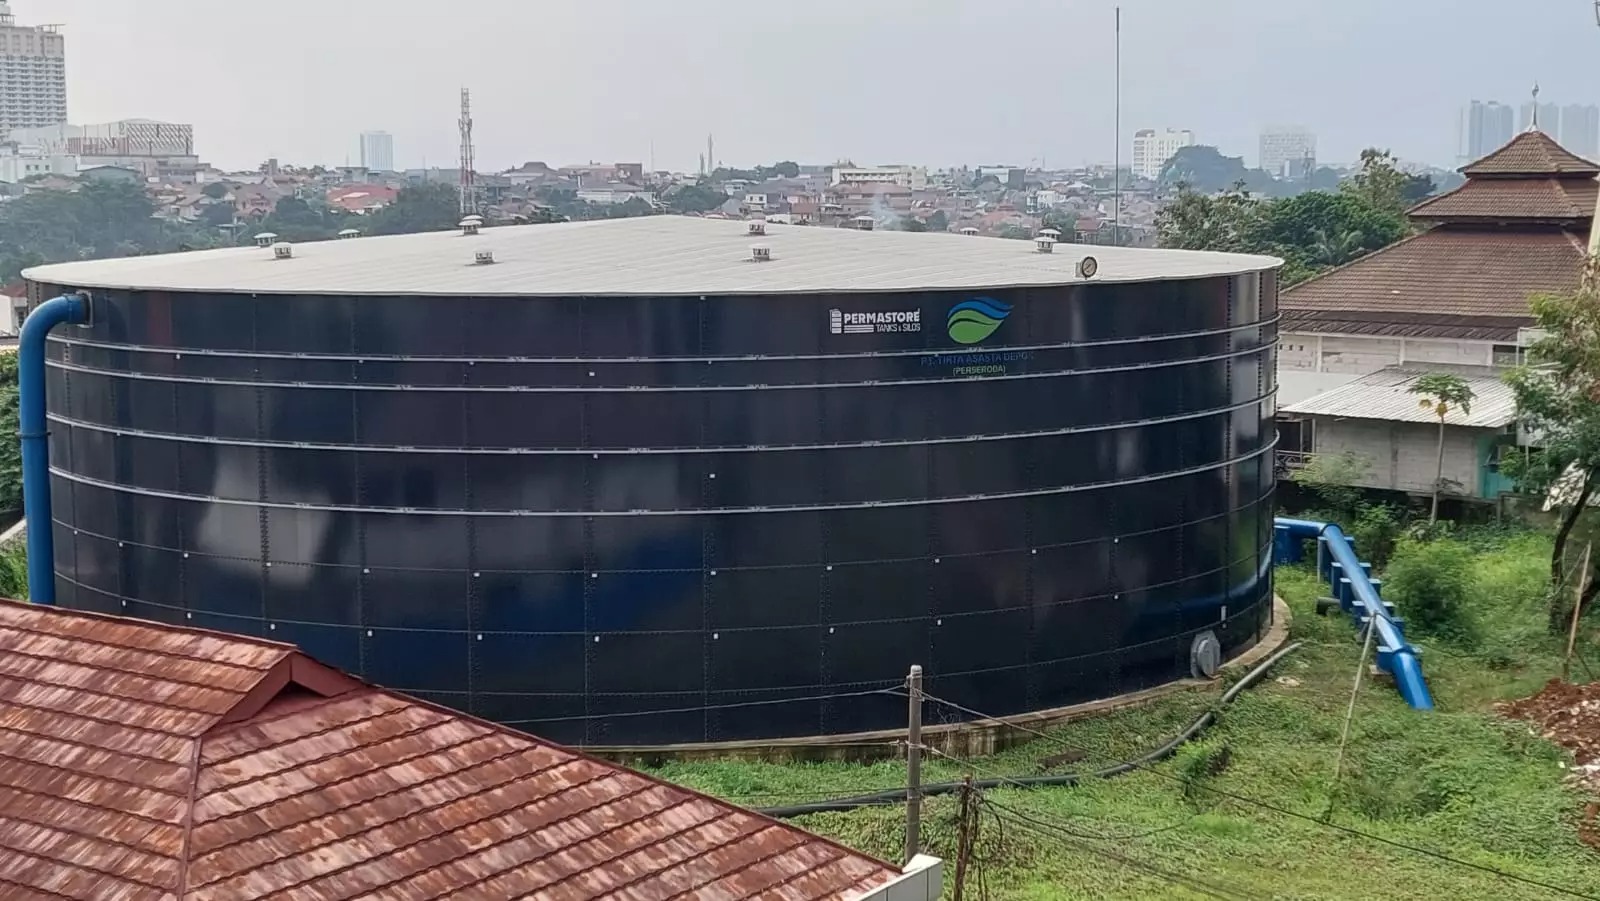 Polemik Proyek Water Tank di Kota Depok: Fakta Teknikal Tunjukkan Gagal Struktur